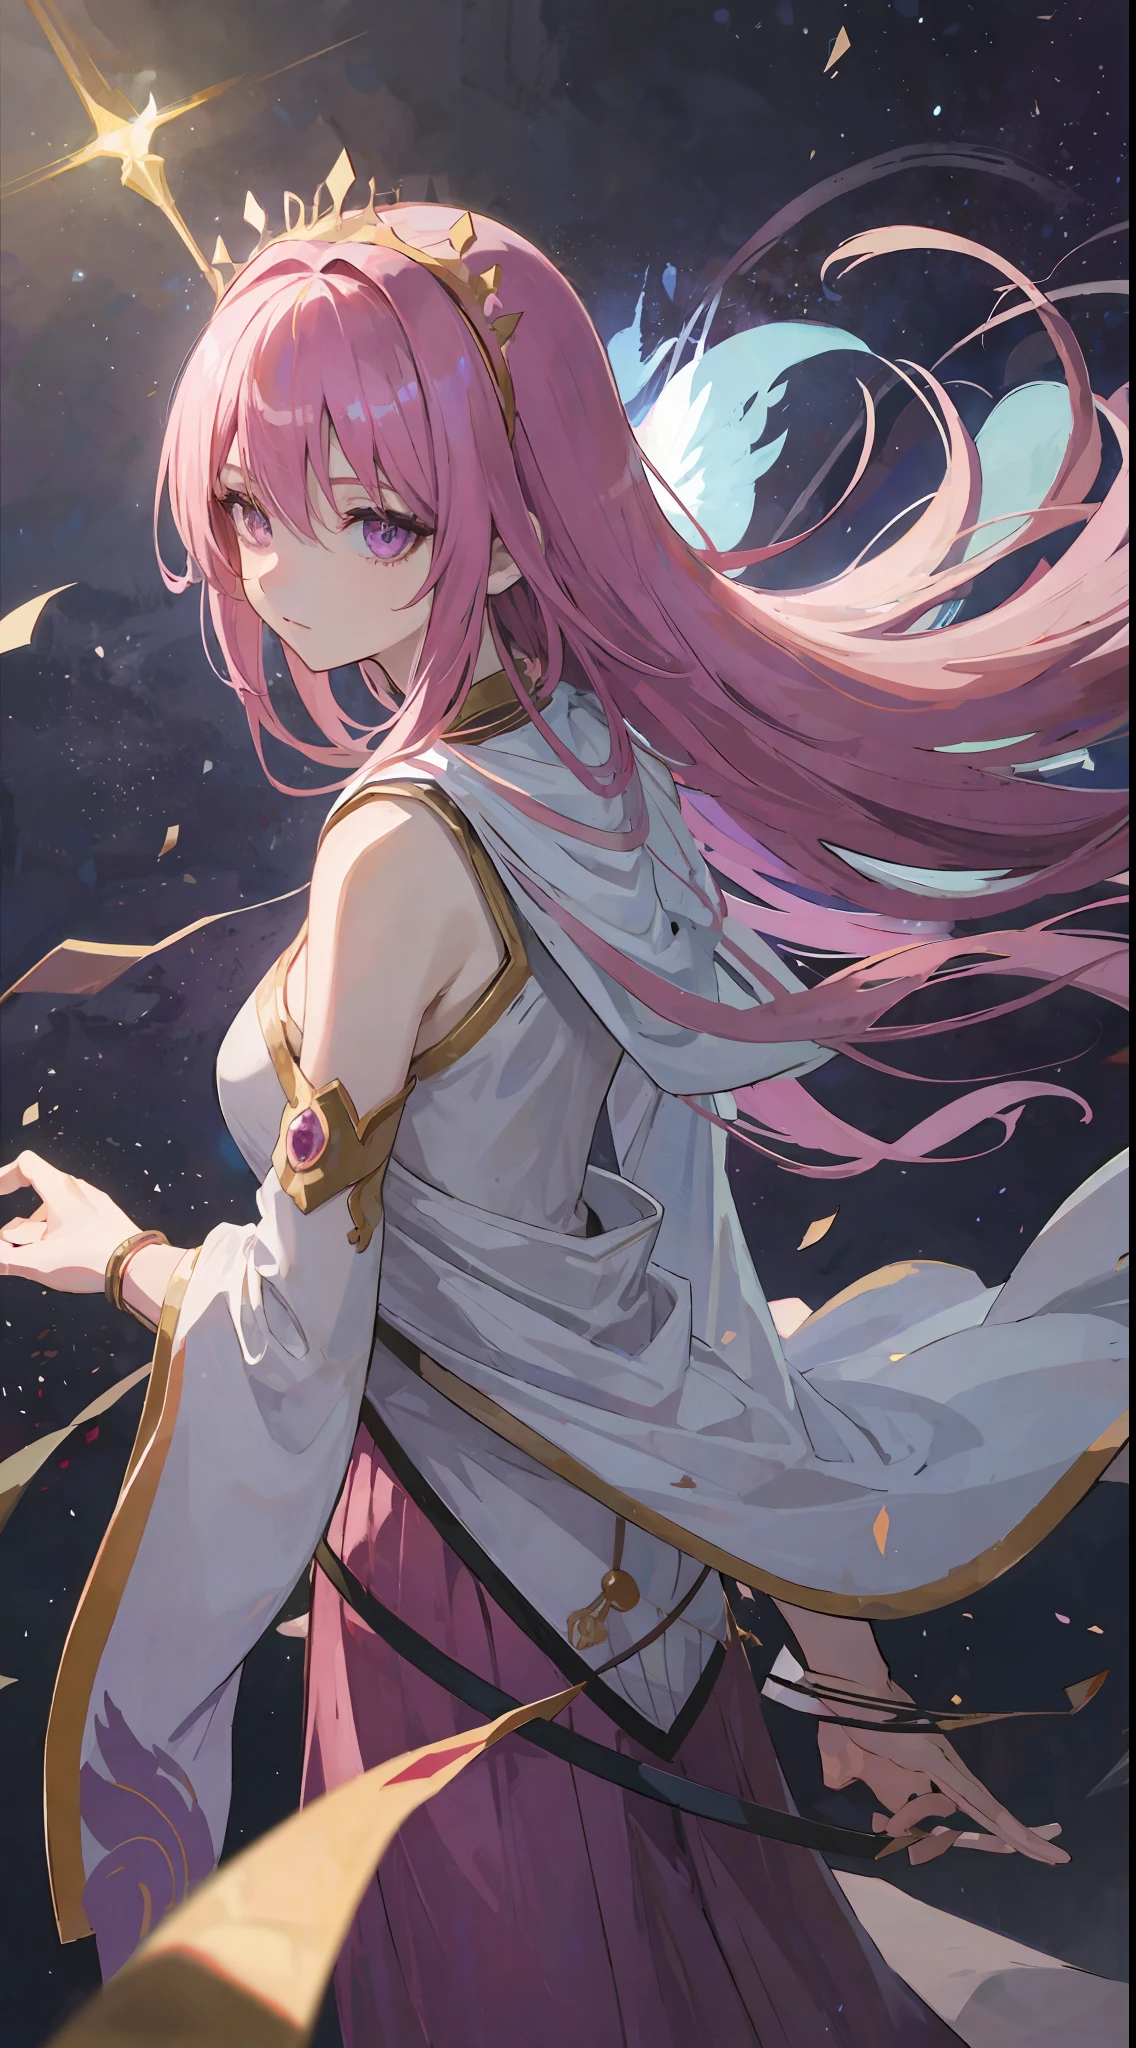 1 garota, cabelo rosa, olhos roxos afiados, ela uma deusa usar coroa divina, faça como no estilo anime de tarô, mas sem moldura